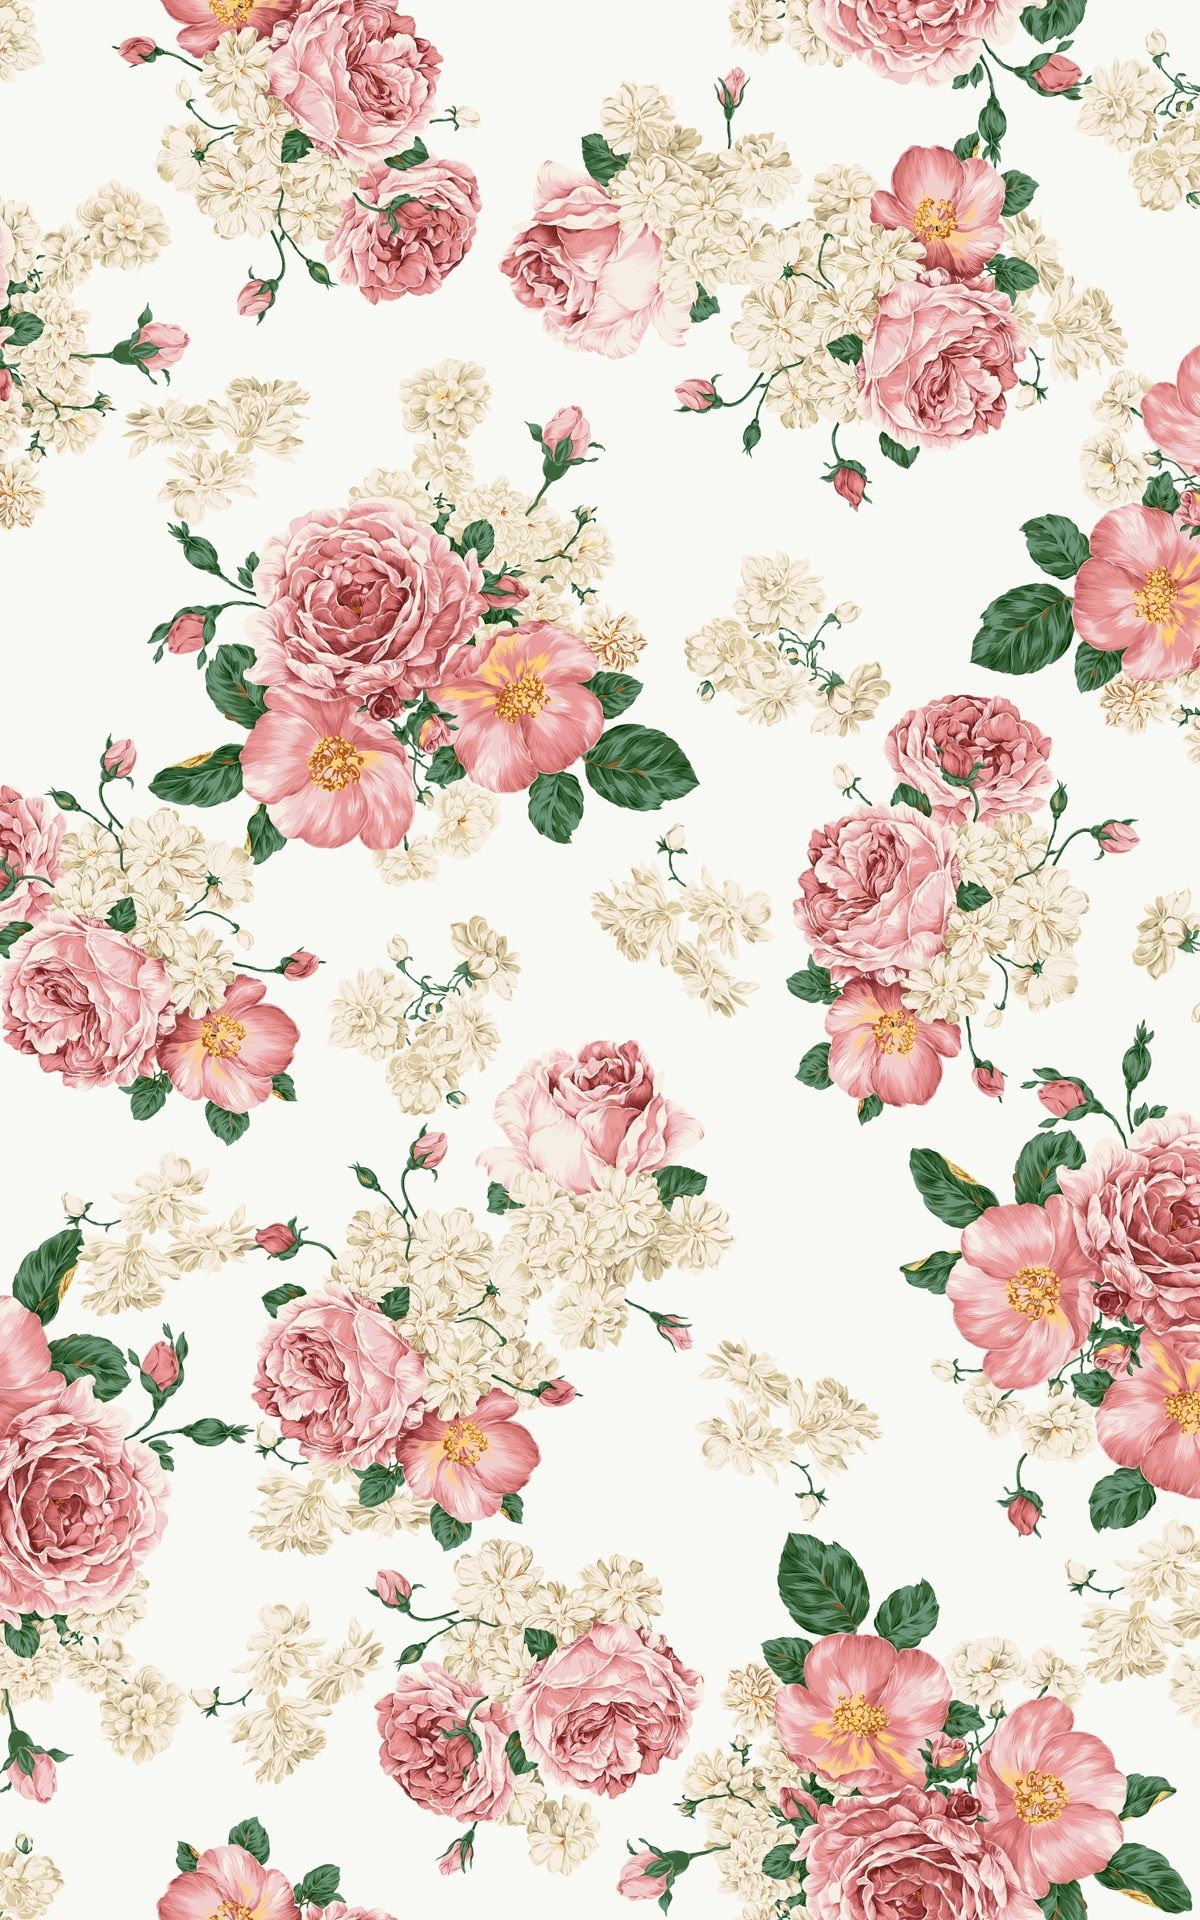 flower wallpaper tumblr hd 1080p 12 hd wallpapers | ورد للديكوباج in